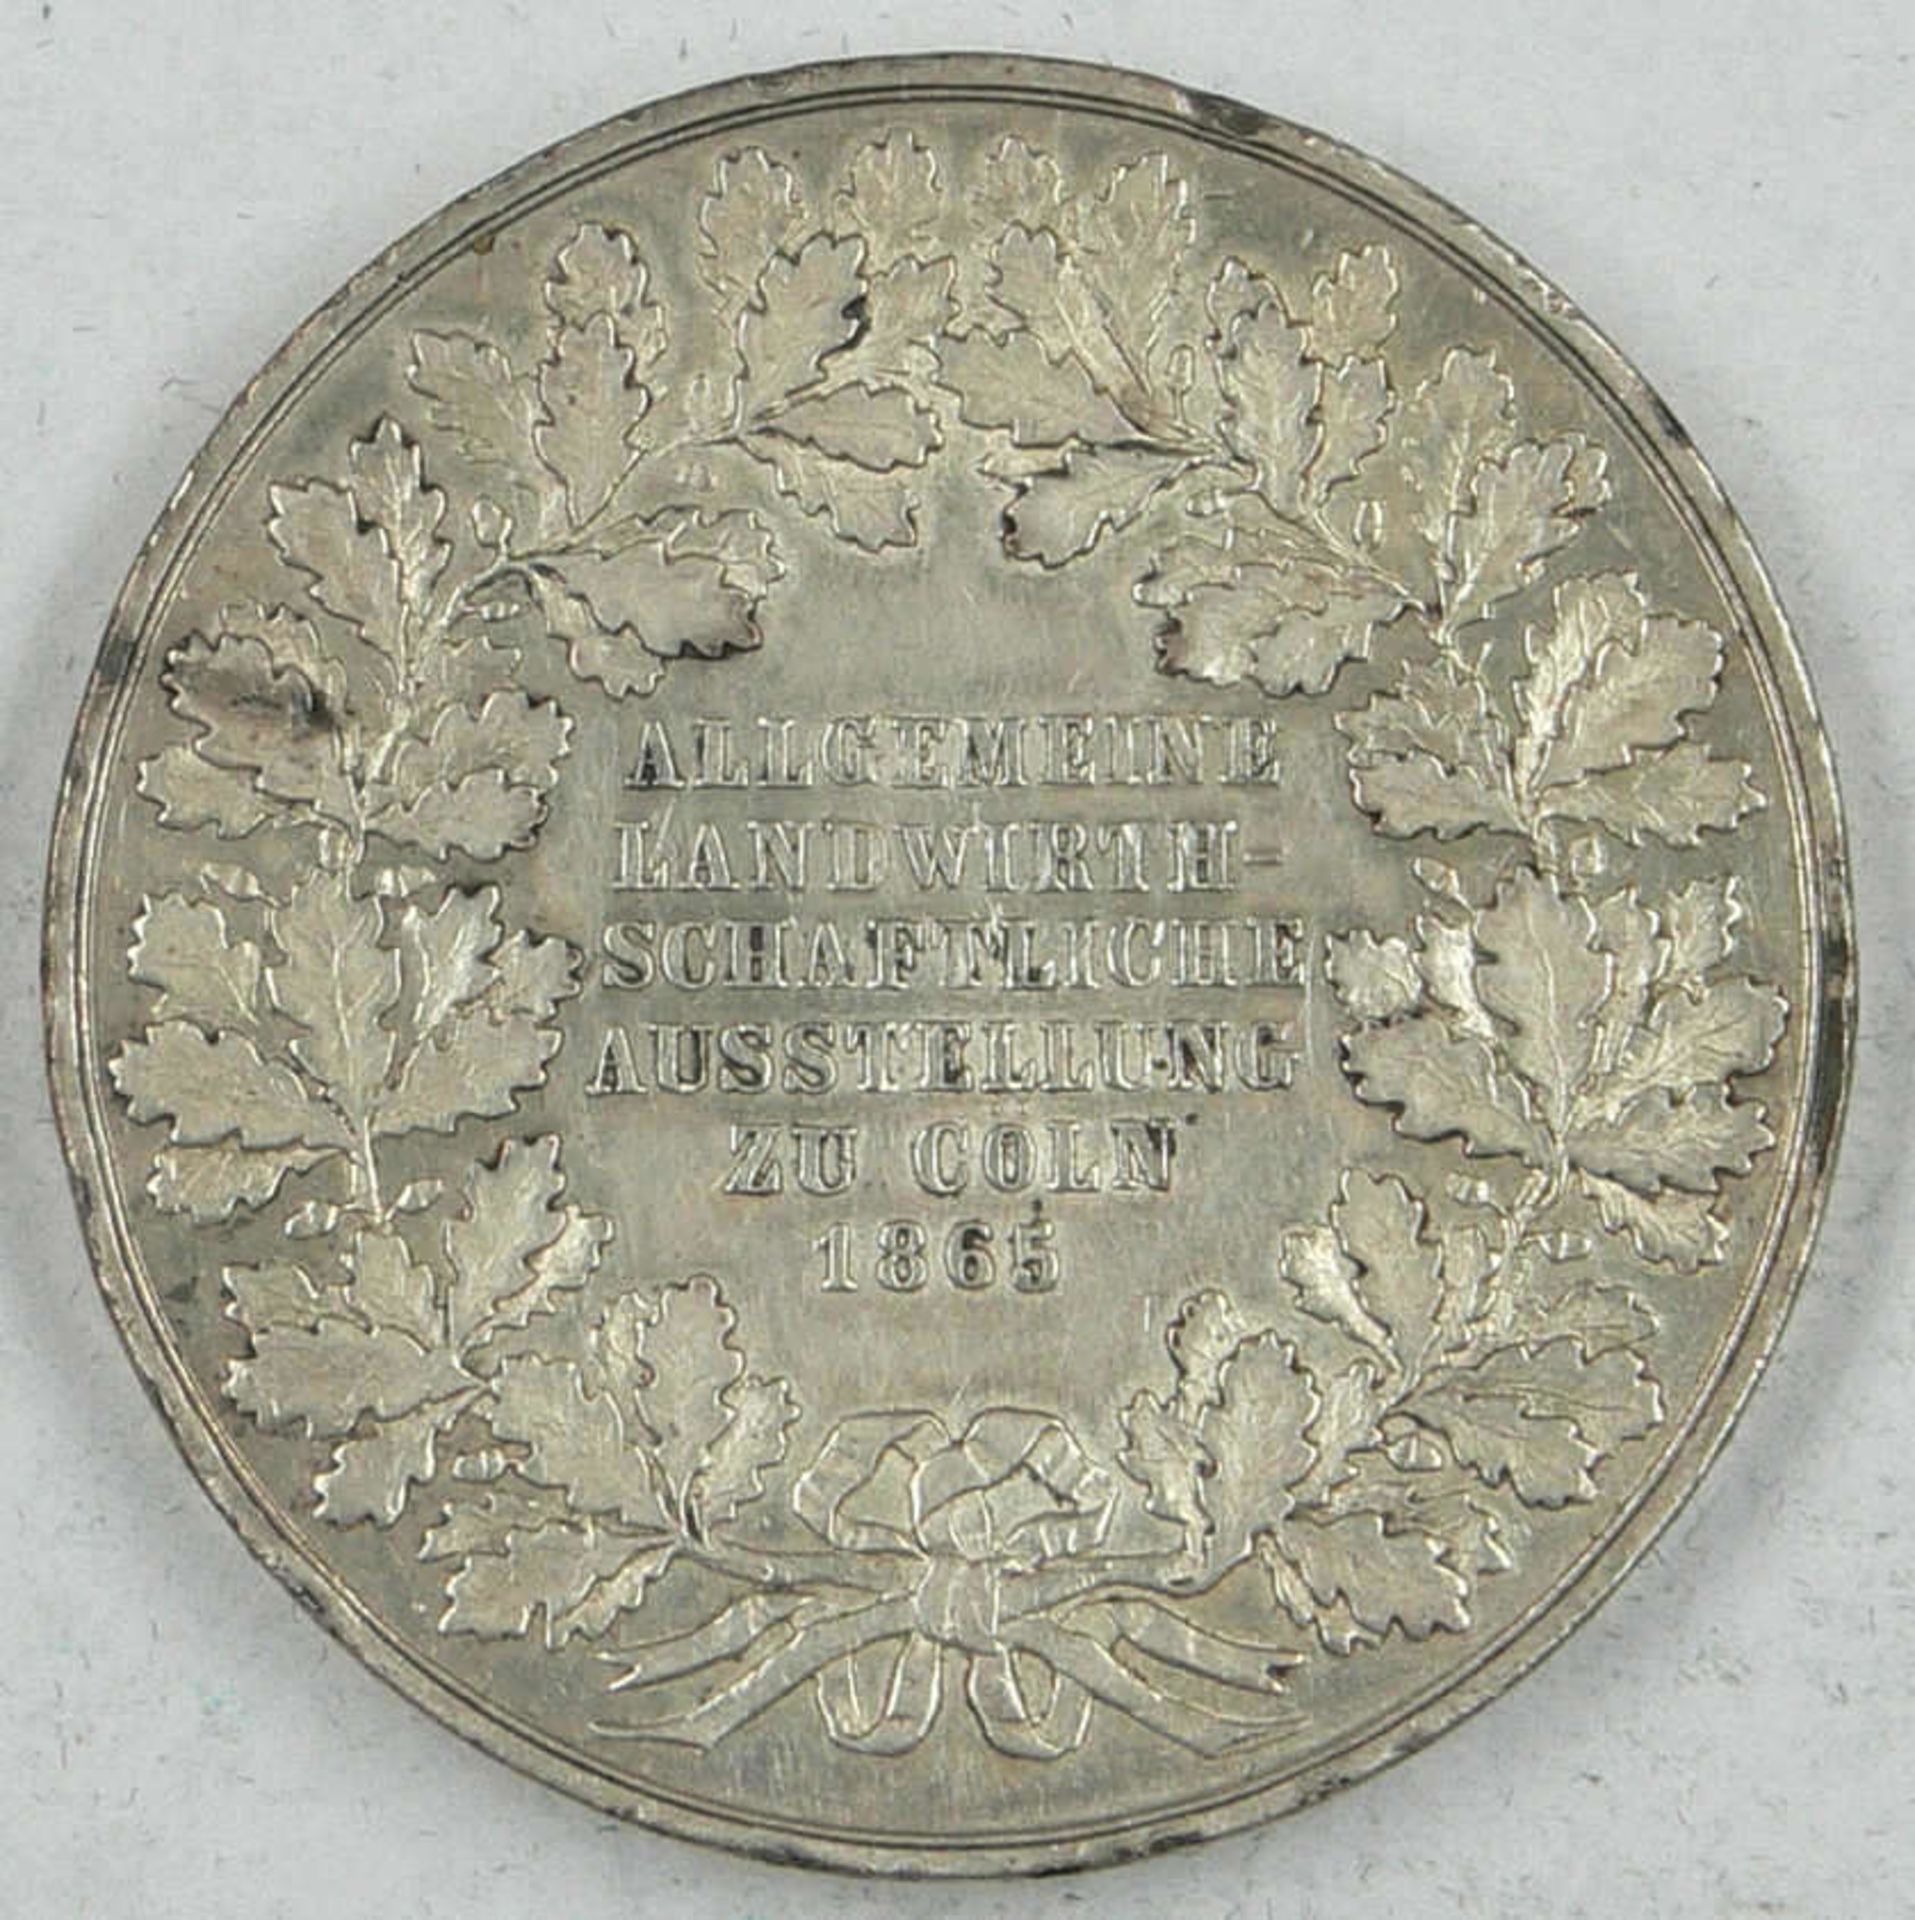 Medaille Cöln 1865, zur allgemeinen landwirtschaftlichen Ausstellung zu Cöln 1865, silberne Medaille